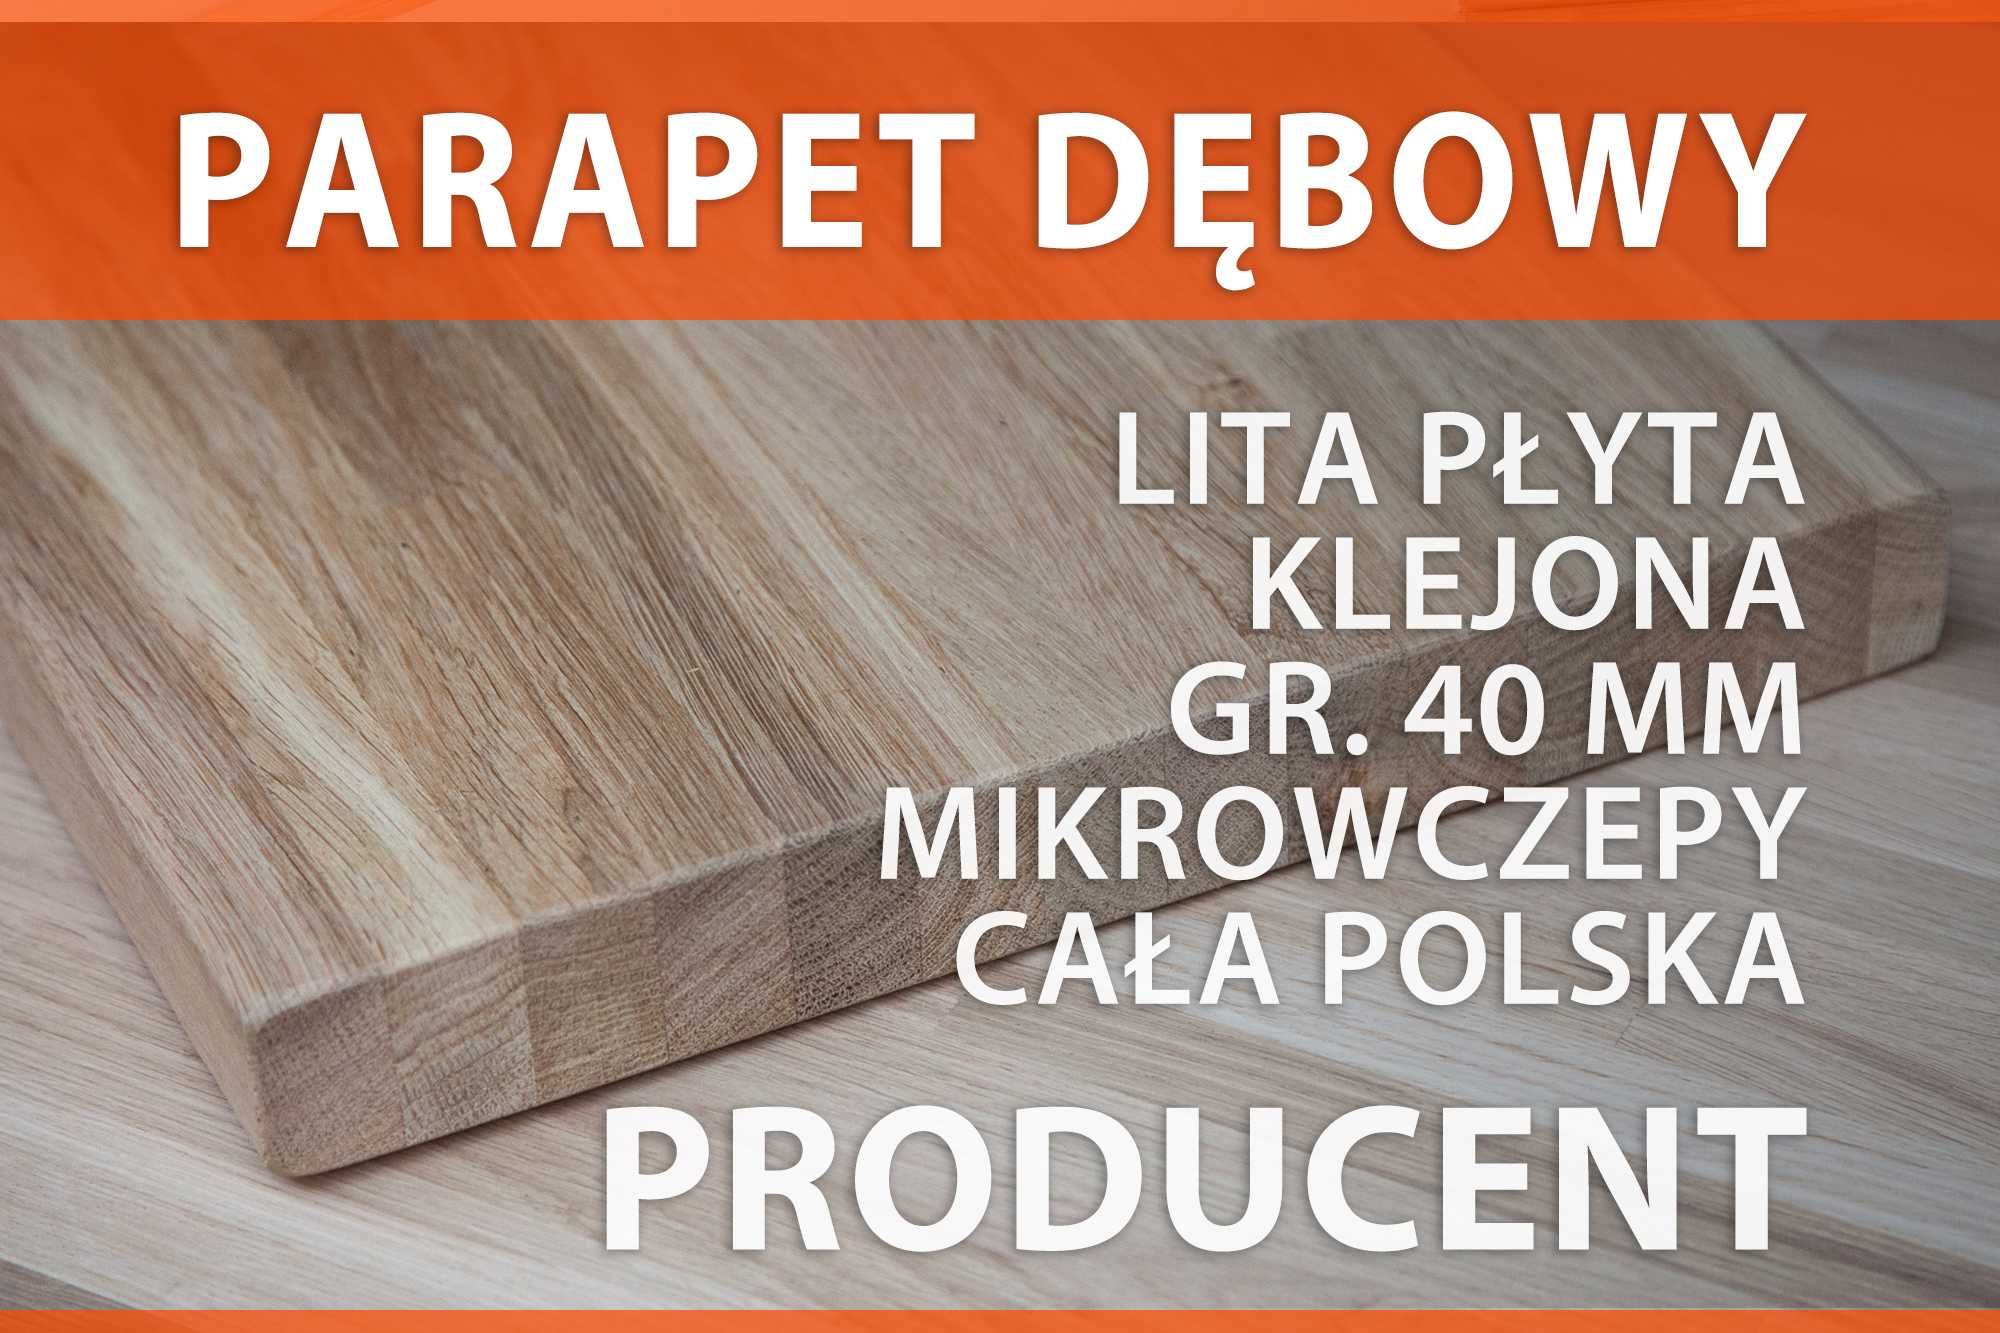 Parapet drewniany, wewnętrzny, półka dębowa 40mm mikrowczepy Producent